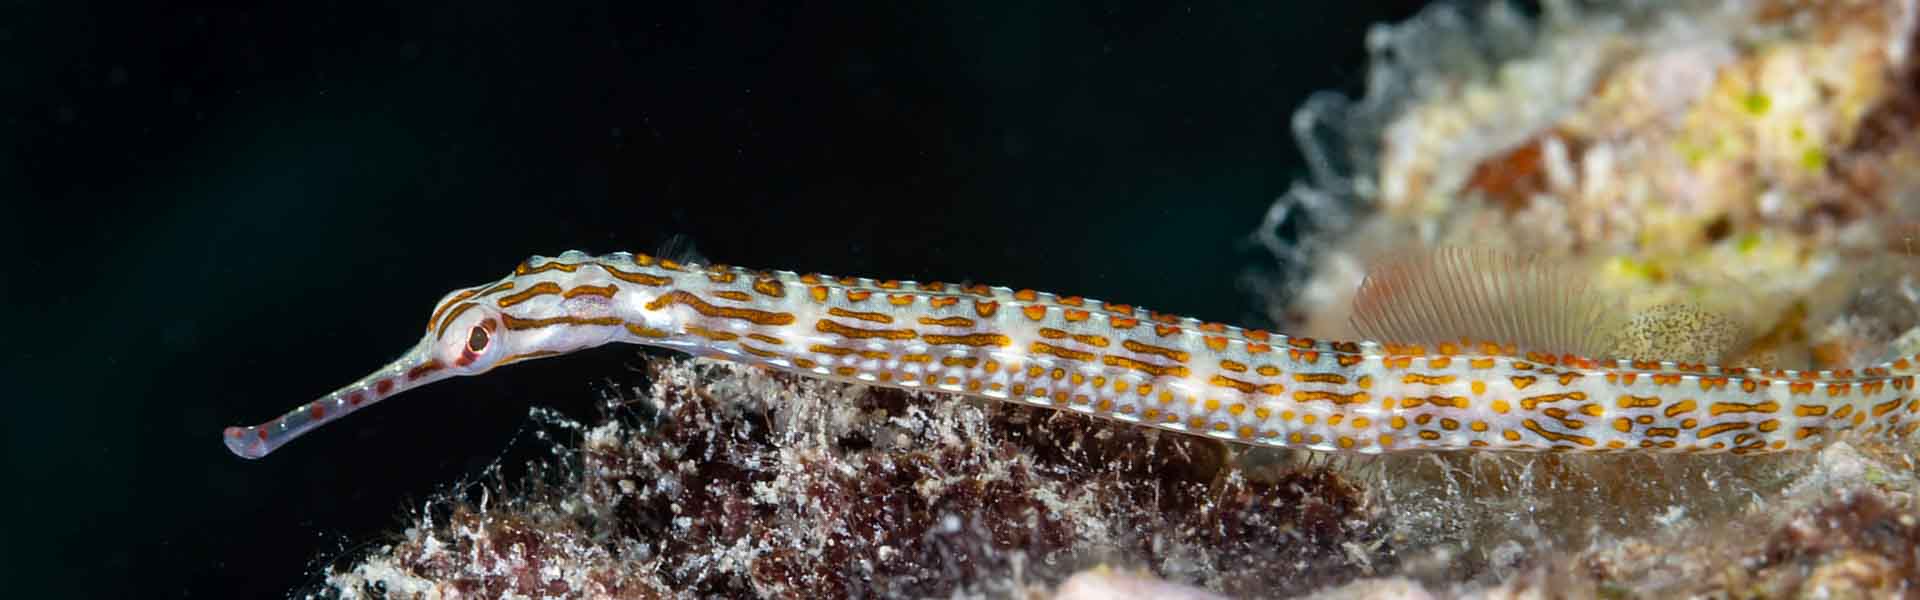 the-samoan-pipefish